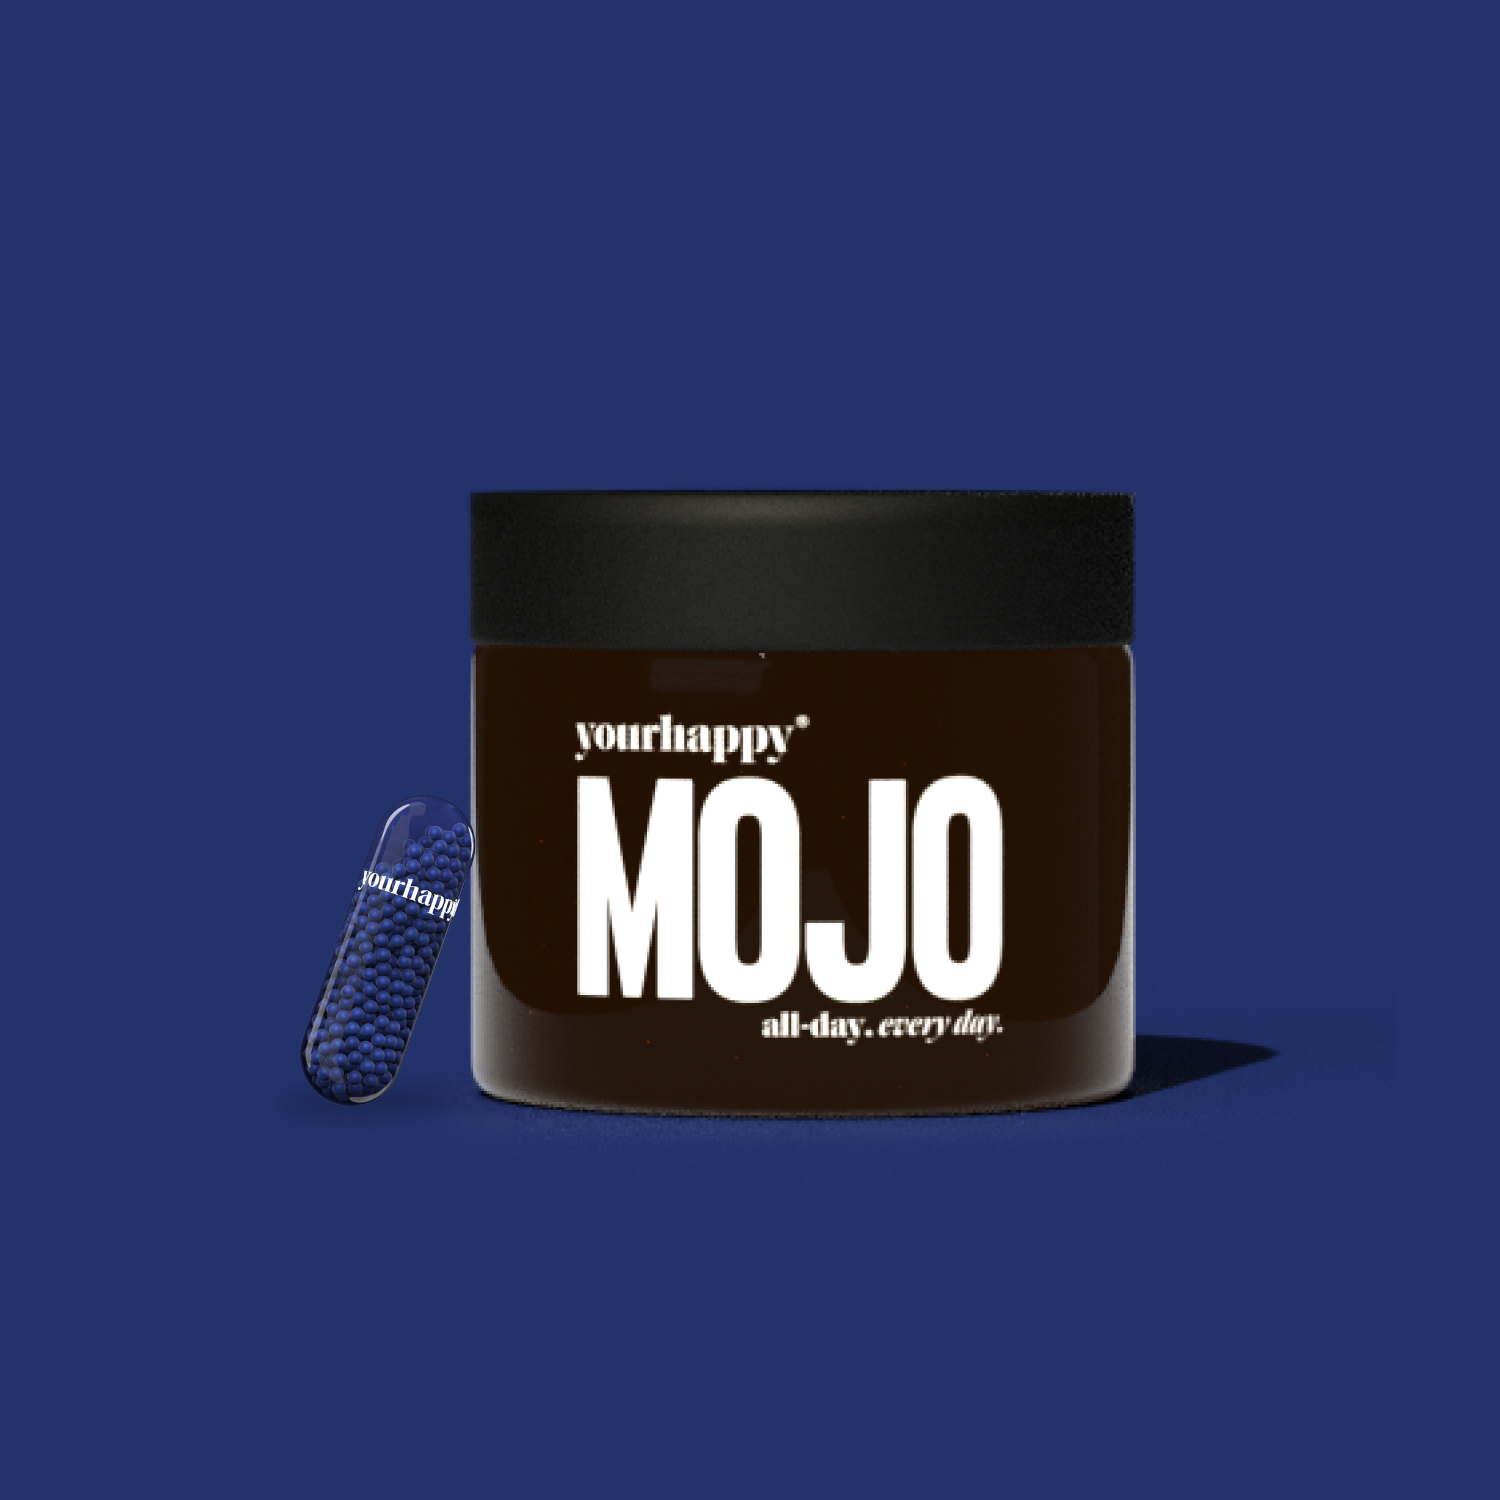 Mojo Product